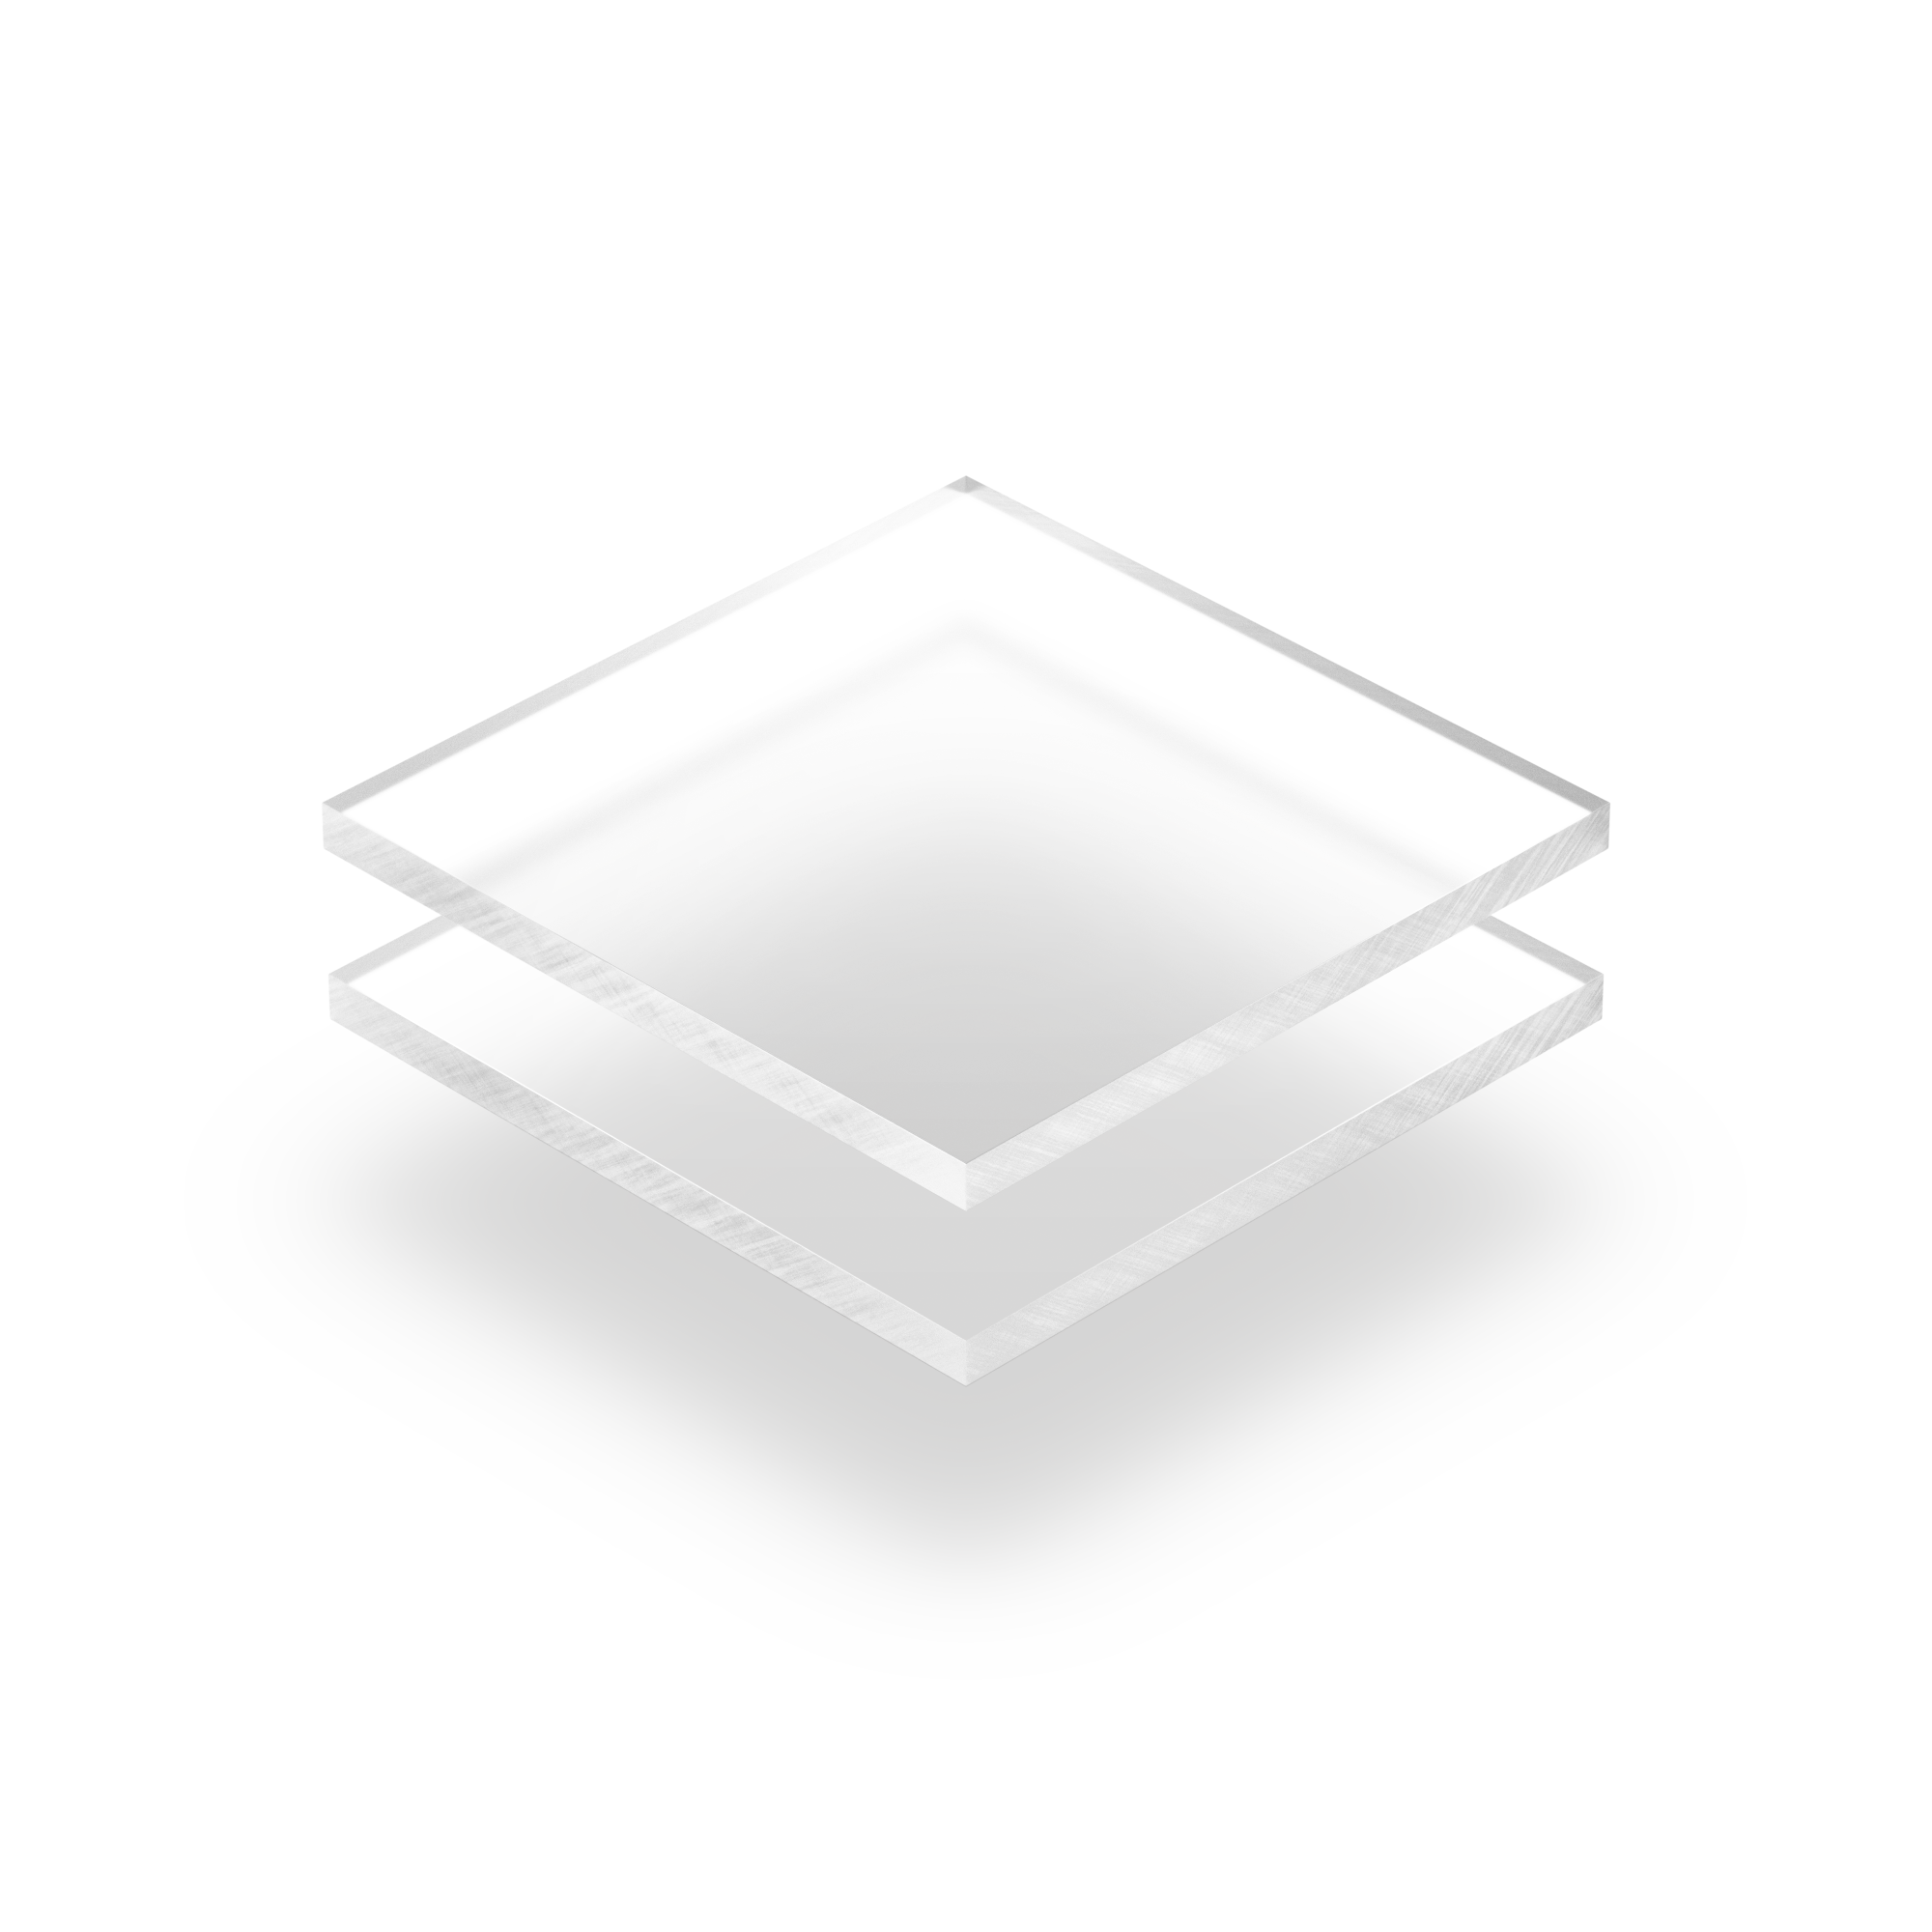 Plexiglass givré transparent 3mm